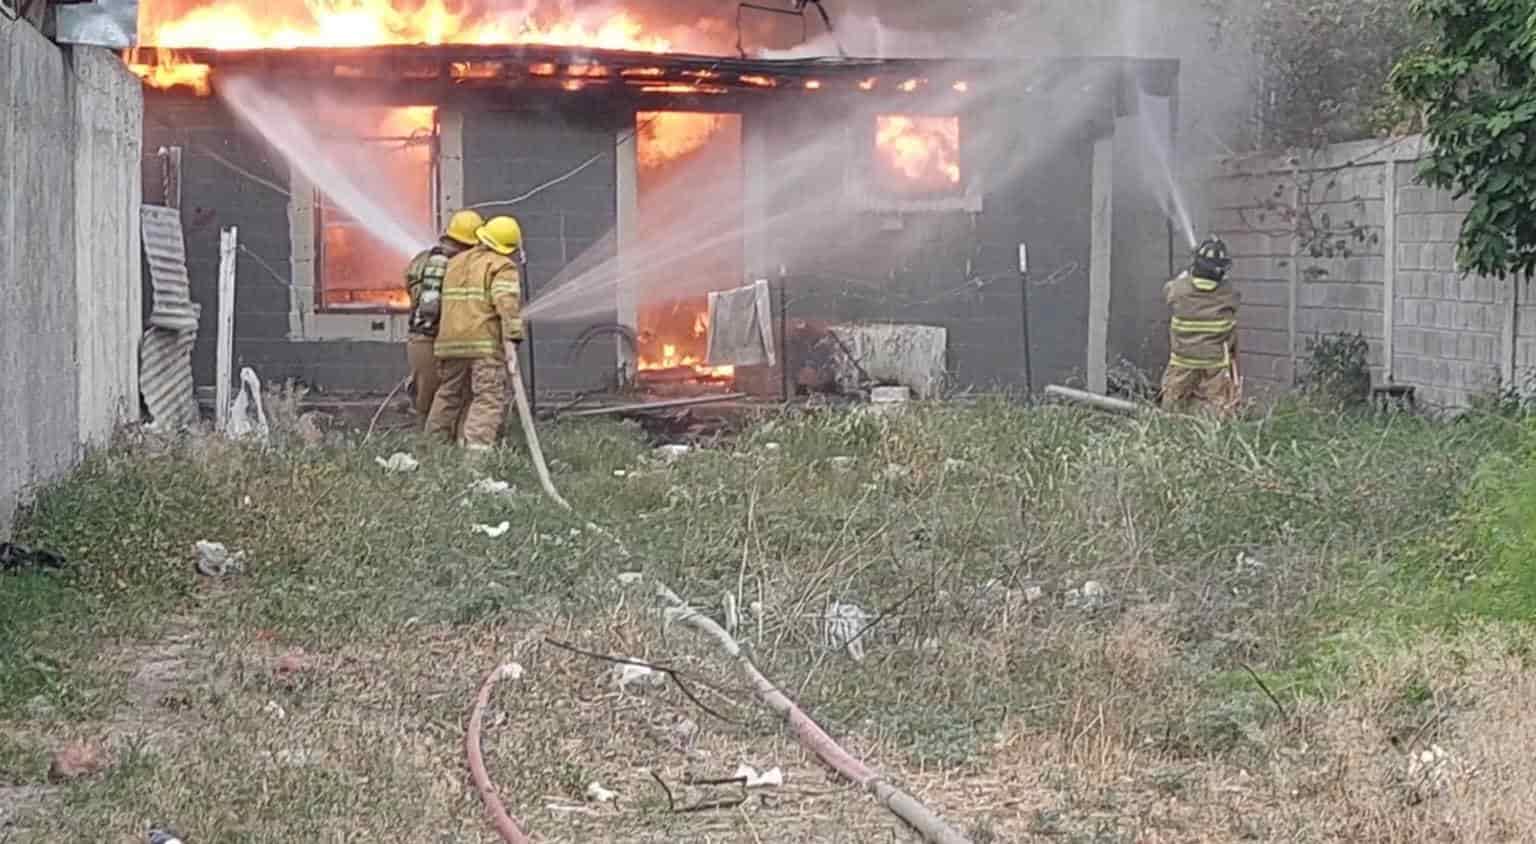 TRAGEDIA EN ALLENDE: Muere hombre de 59 años dentro de casa en terrible incendio